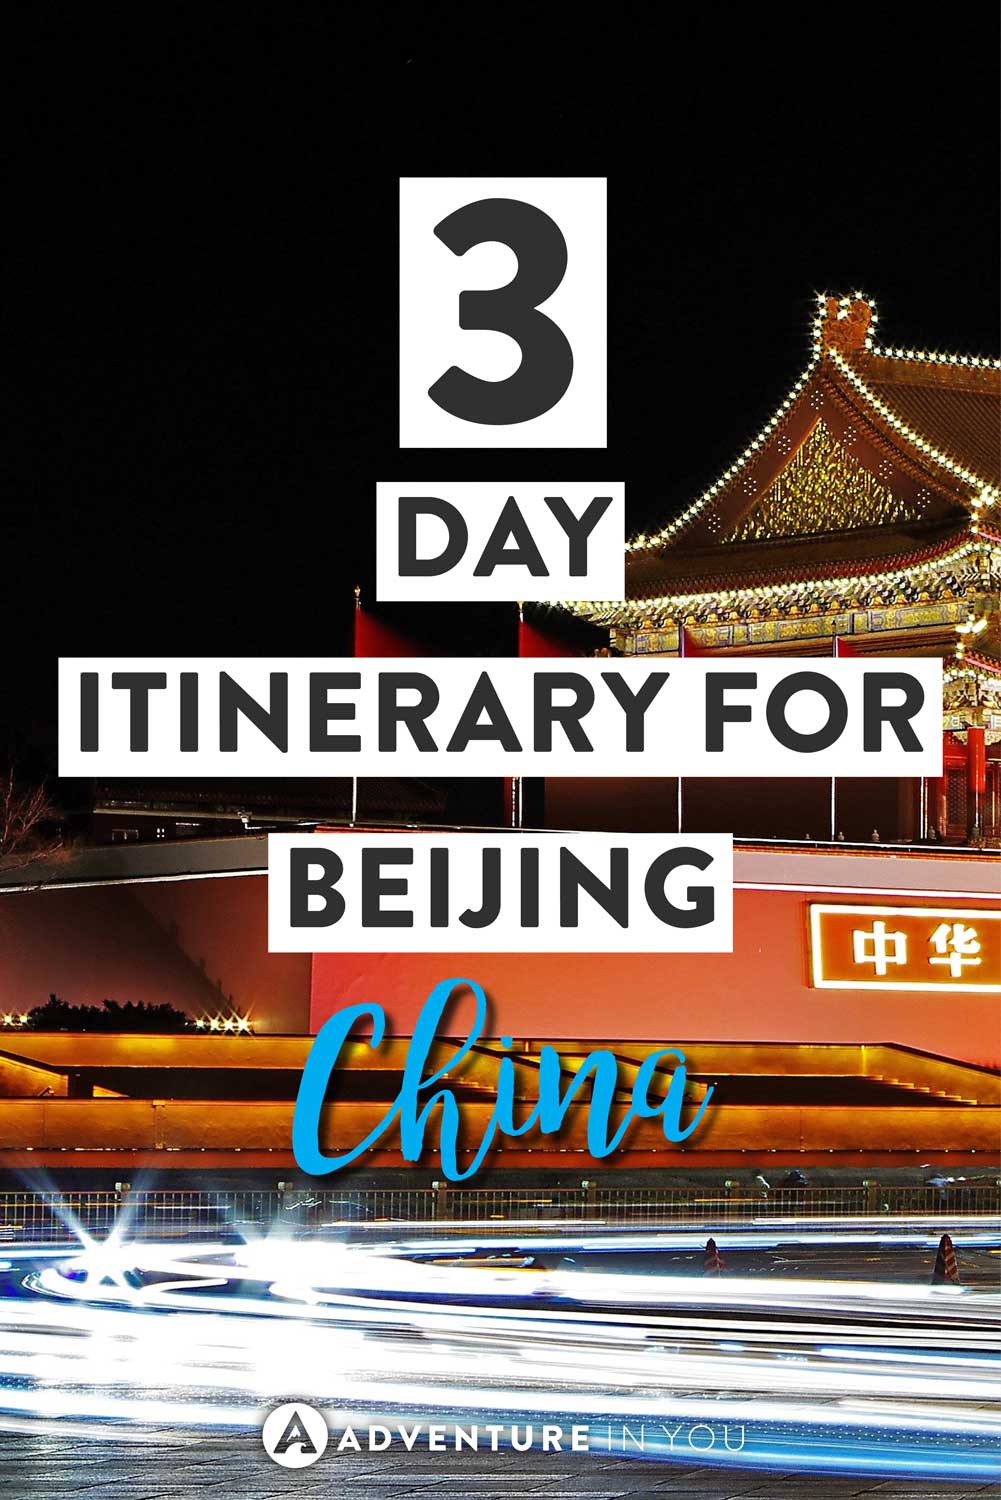 beijing travel itinerary